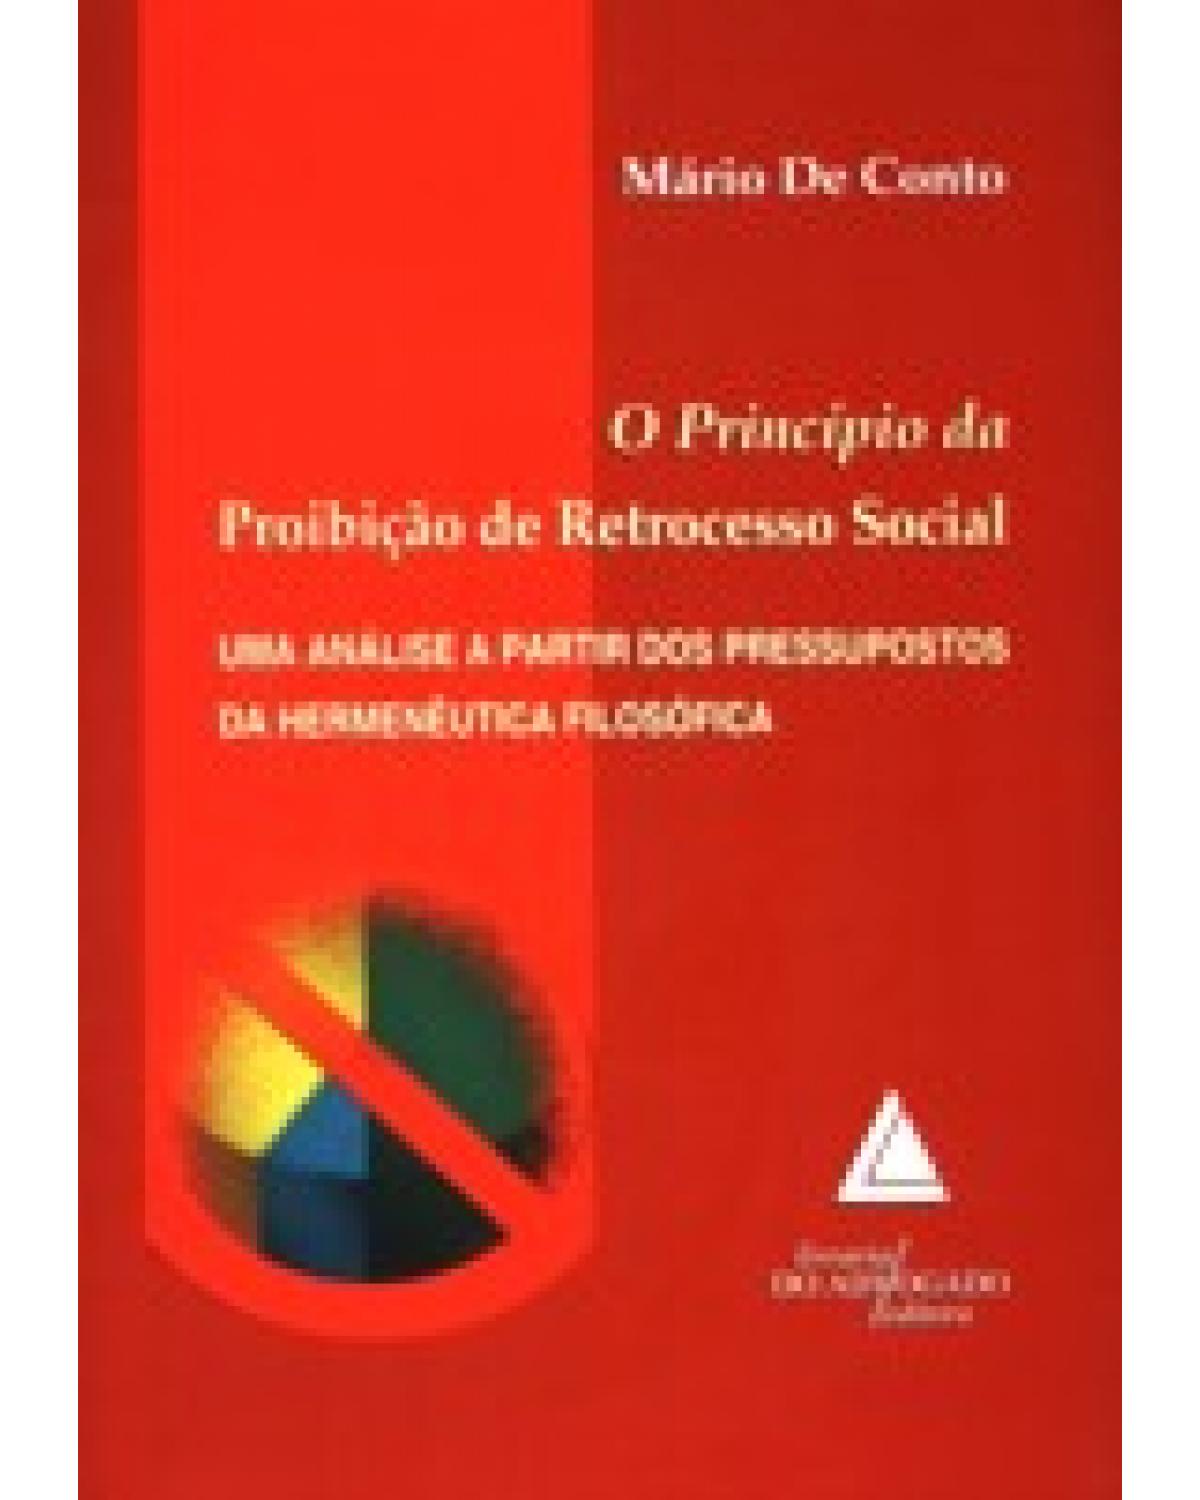 O princípio da proibição de retrocesso social: Uma análise a partir dos pressupostos da hermenêutica filosófica - 1ª Edição | 2008